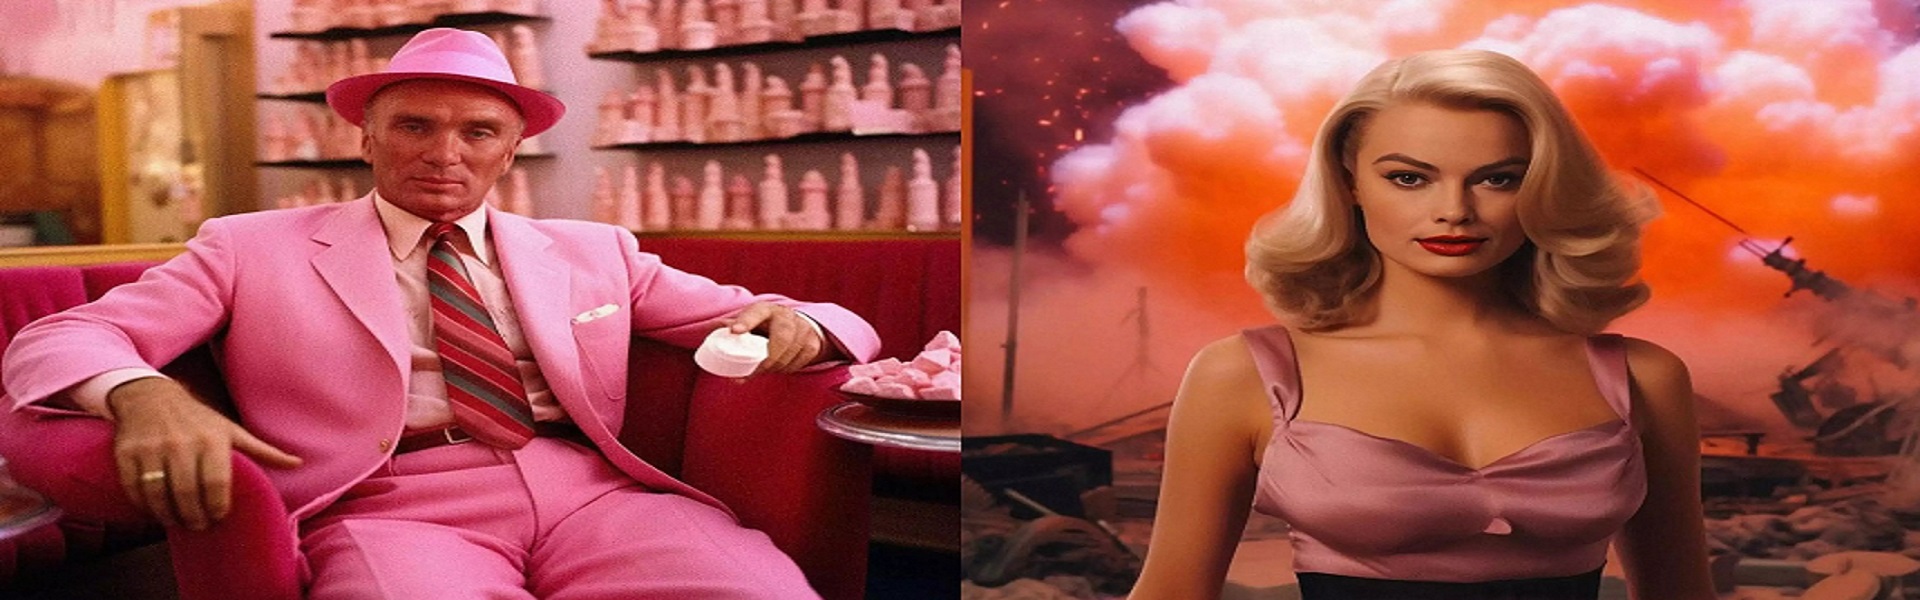 Barbie, la bomba e il post-cinema